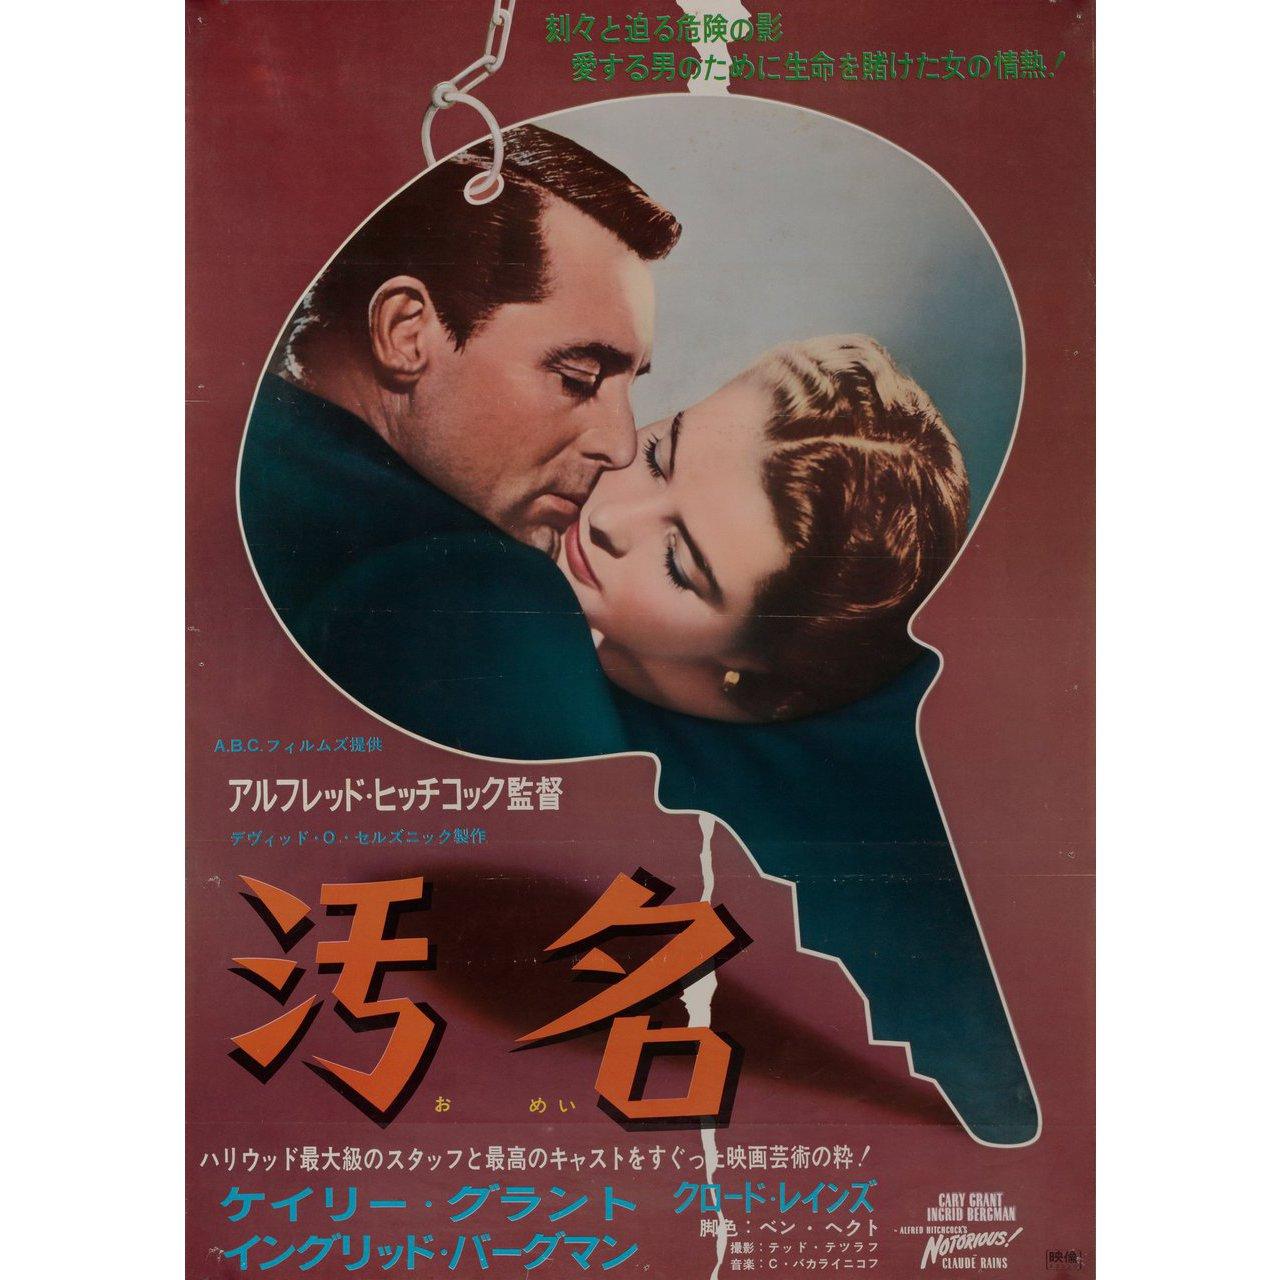 Affiche japonaise B2 originale de 1967 pour le film Notorious réalisé par Alfred Hitchcock en 1946 avec Cary Grant / Ingrid Bergman / Claude Rains / Louis Calhern. Très bon état, plié avec des trous d'épingle et autres usures. De nombreuses affiches